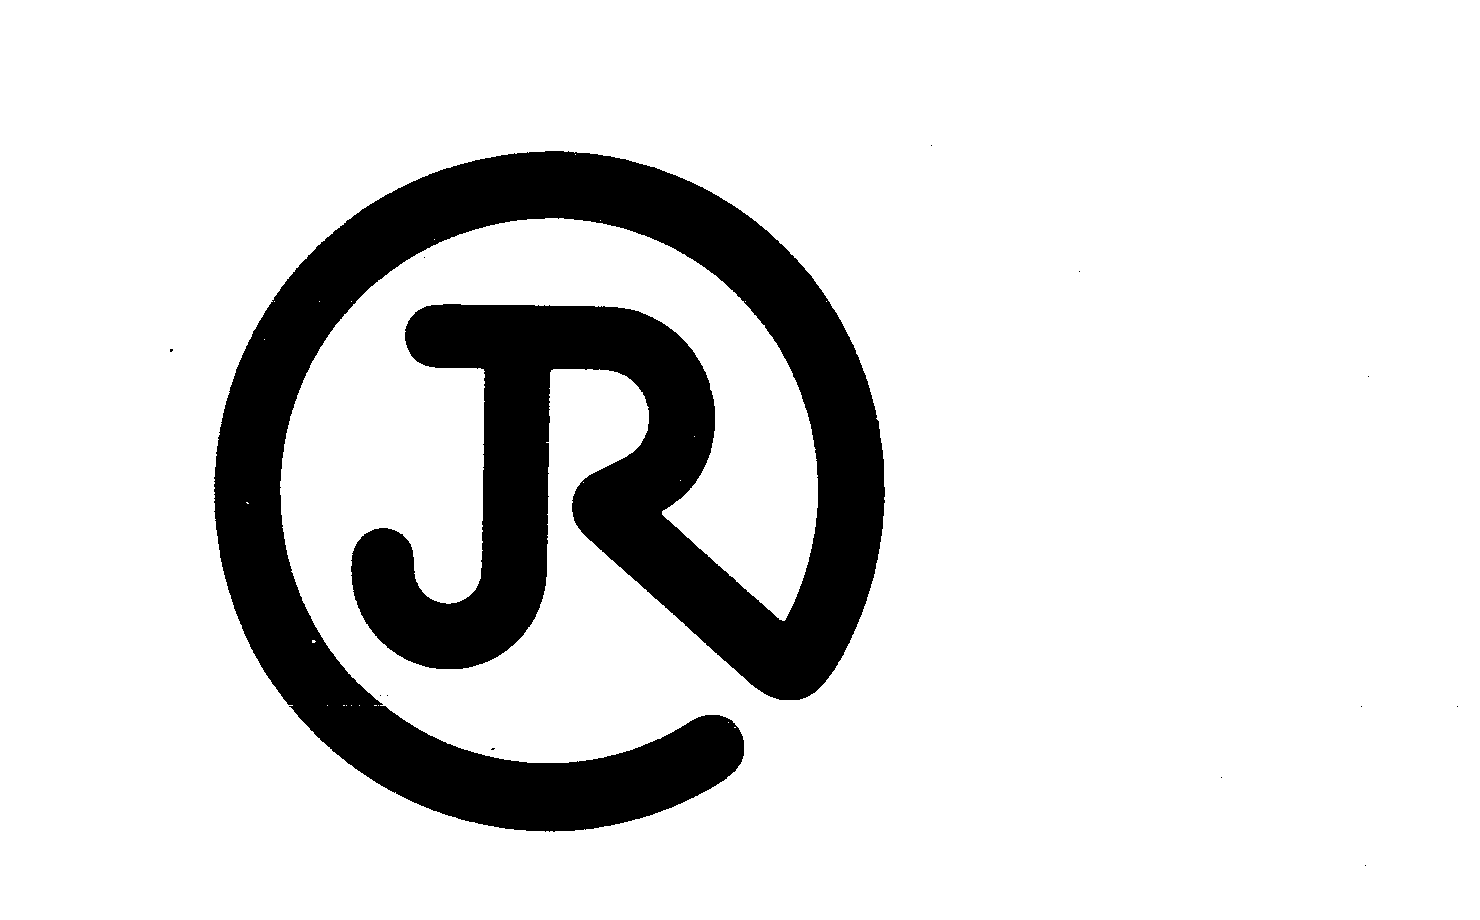 Trademark Logo JR